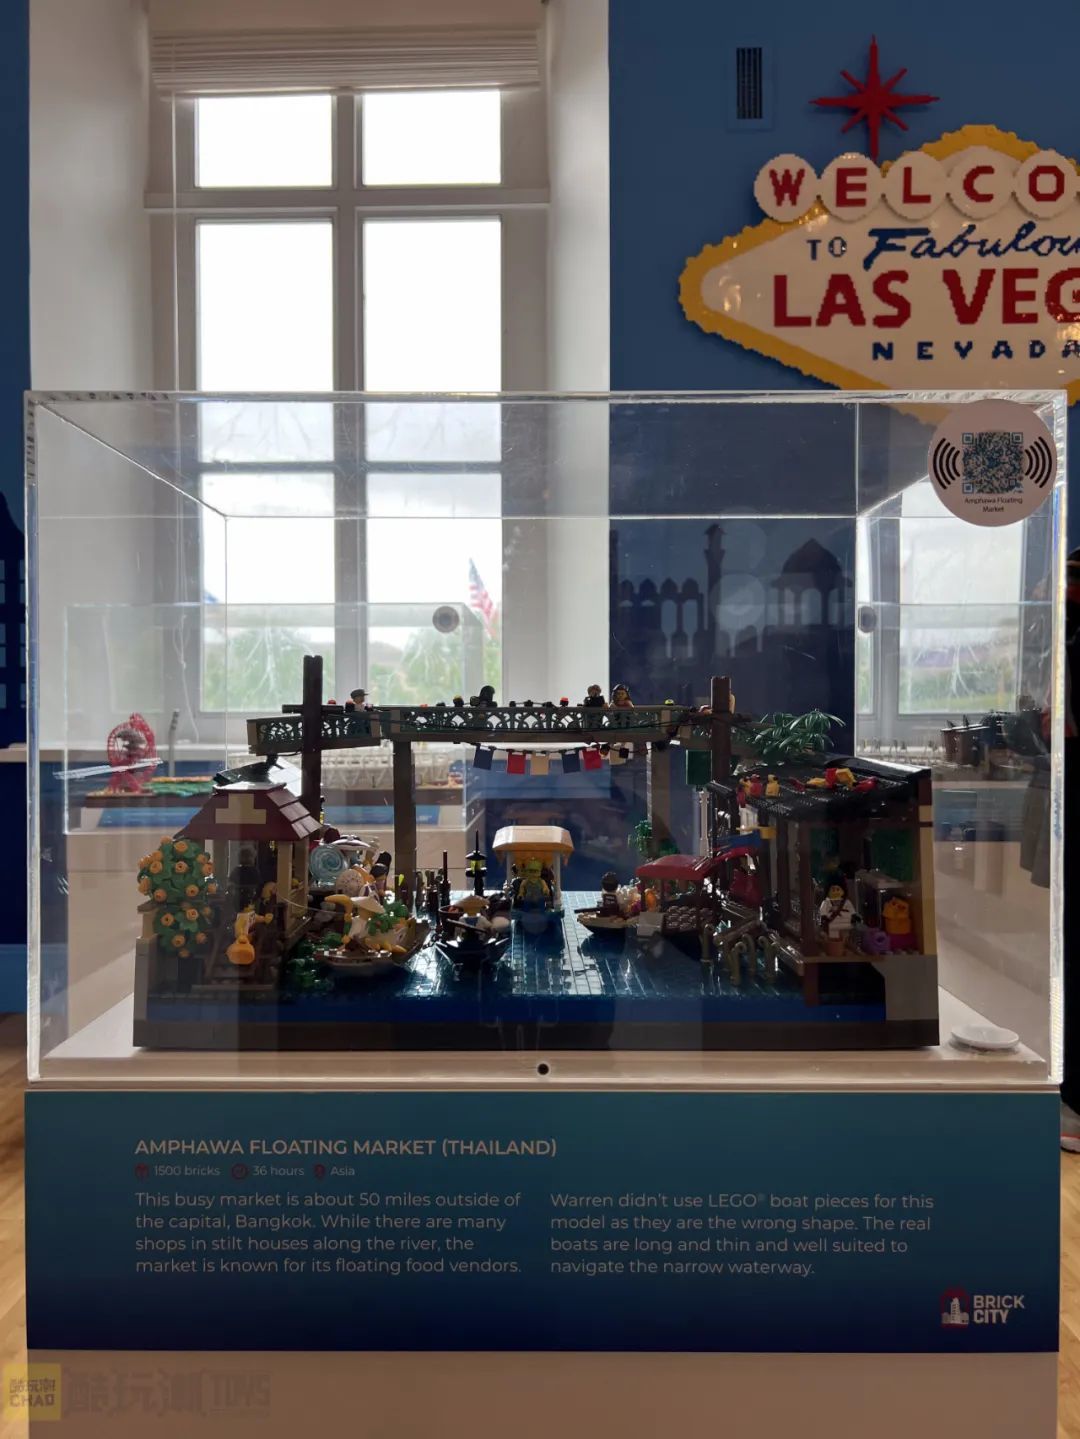 【周边专区】美国国家博物馆Brick City积木展——沃伦·埃尔斯莫尔个人作品展-第0张